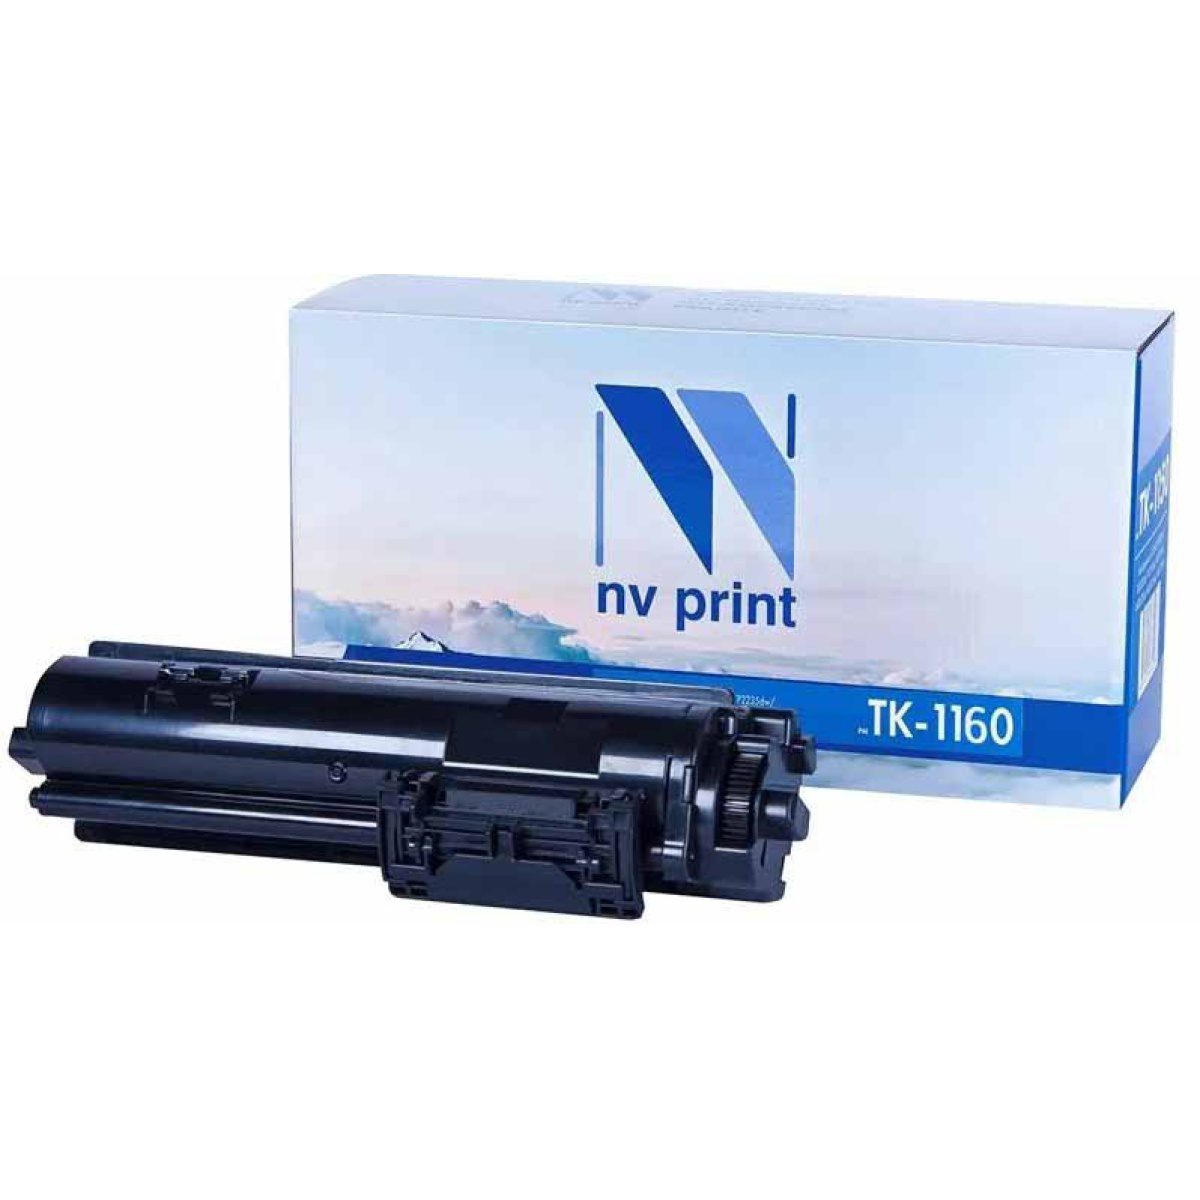 Купить картридж NV Print TK-1160 черный по адекватной цене — Digit-Mall